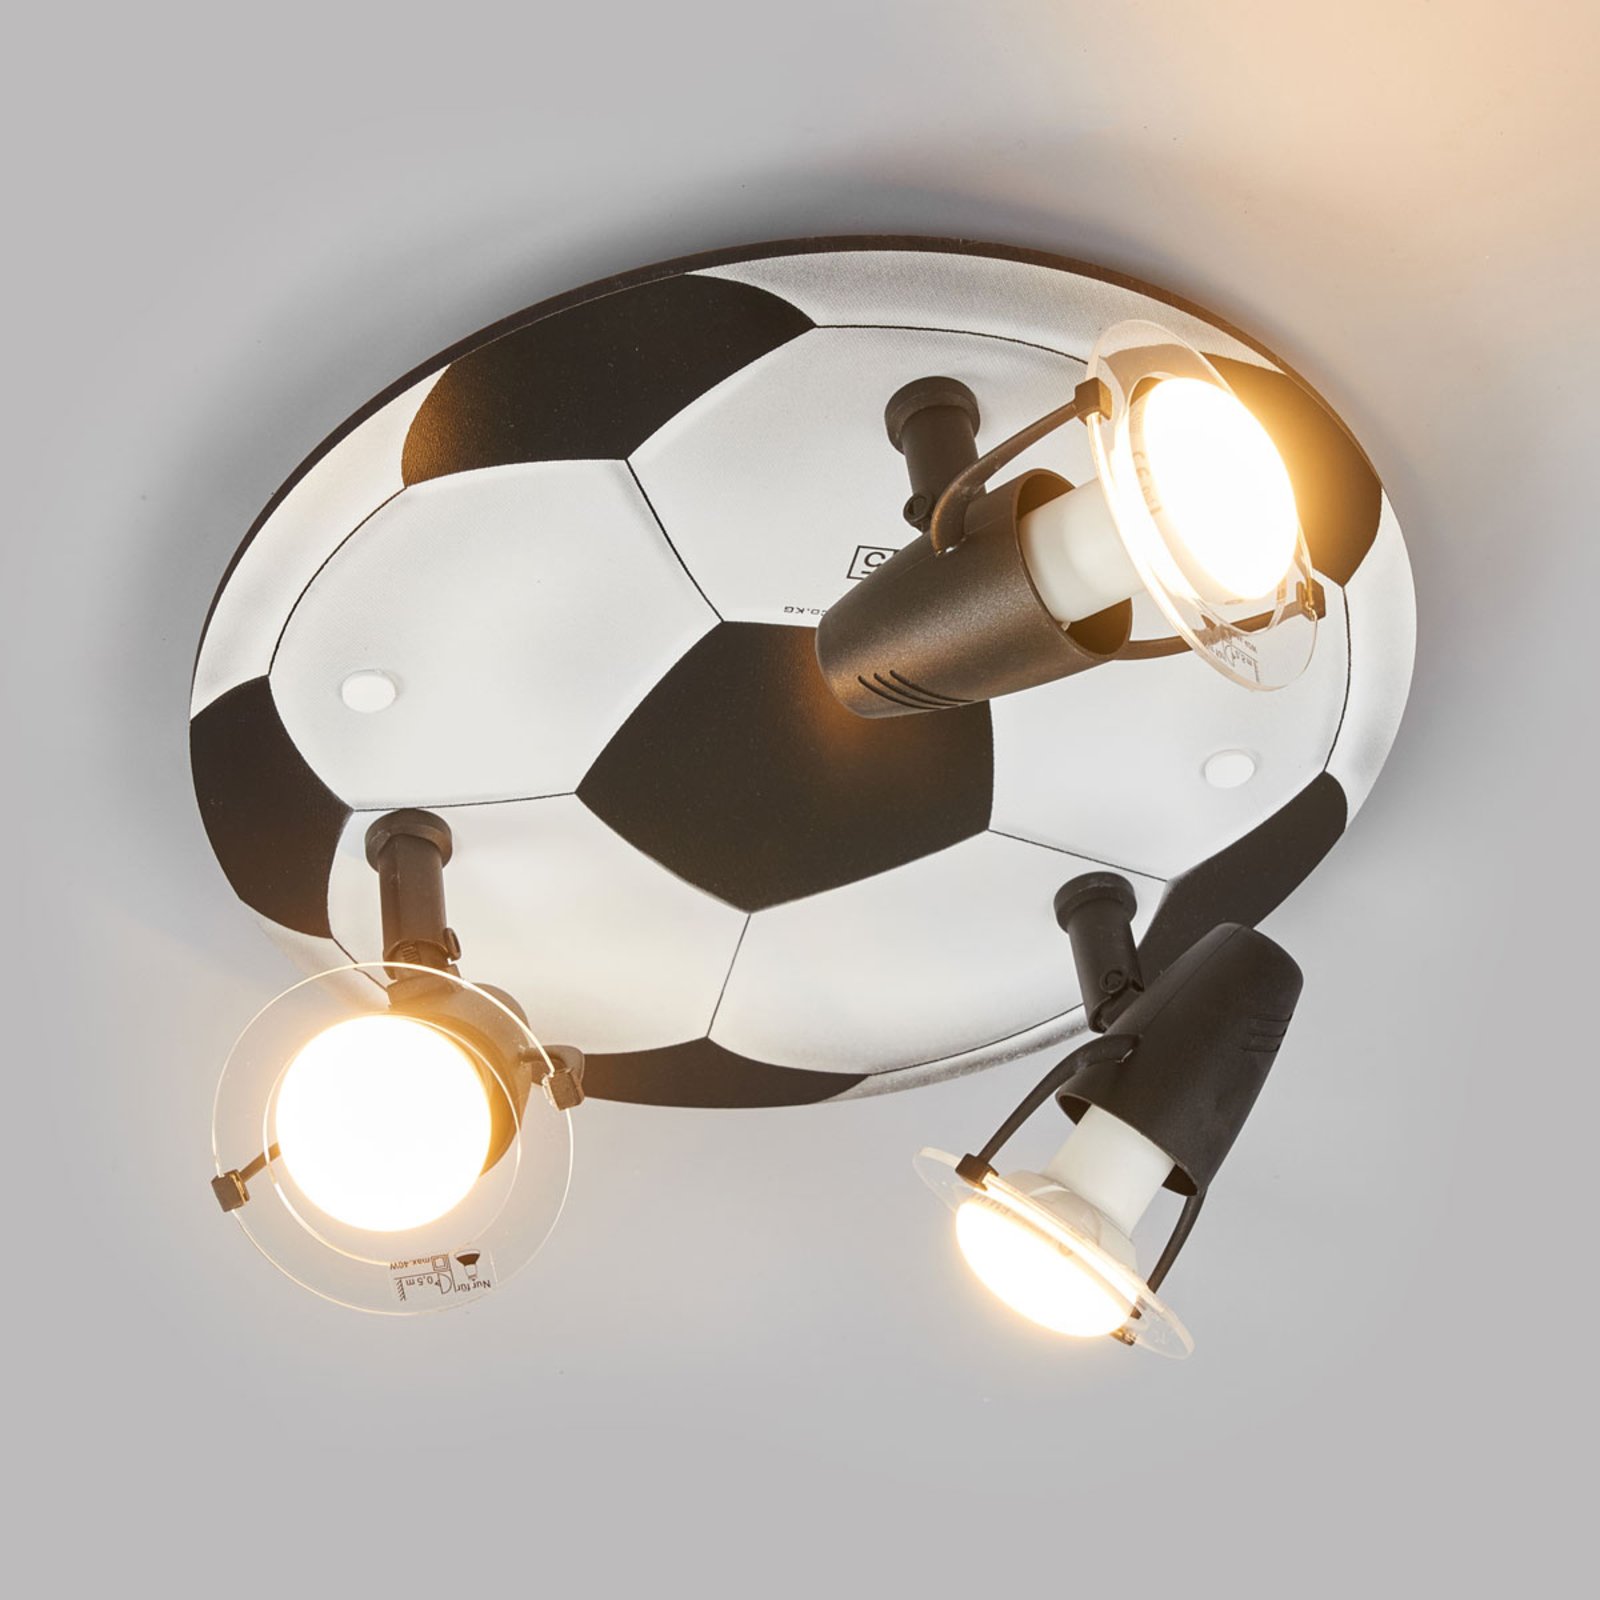 Football ceiling light with 3 bulbs